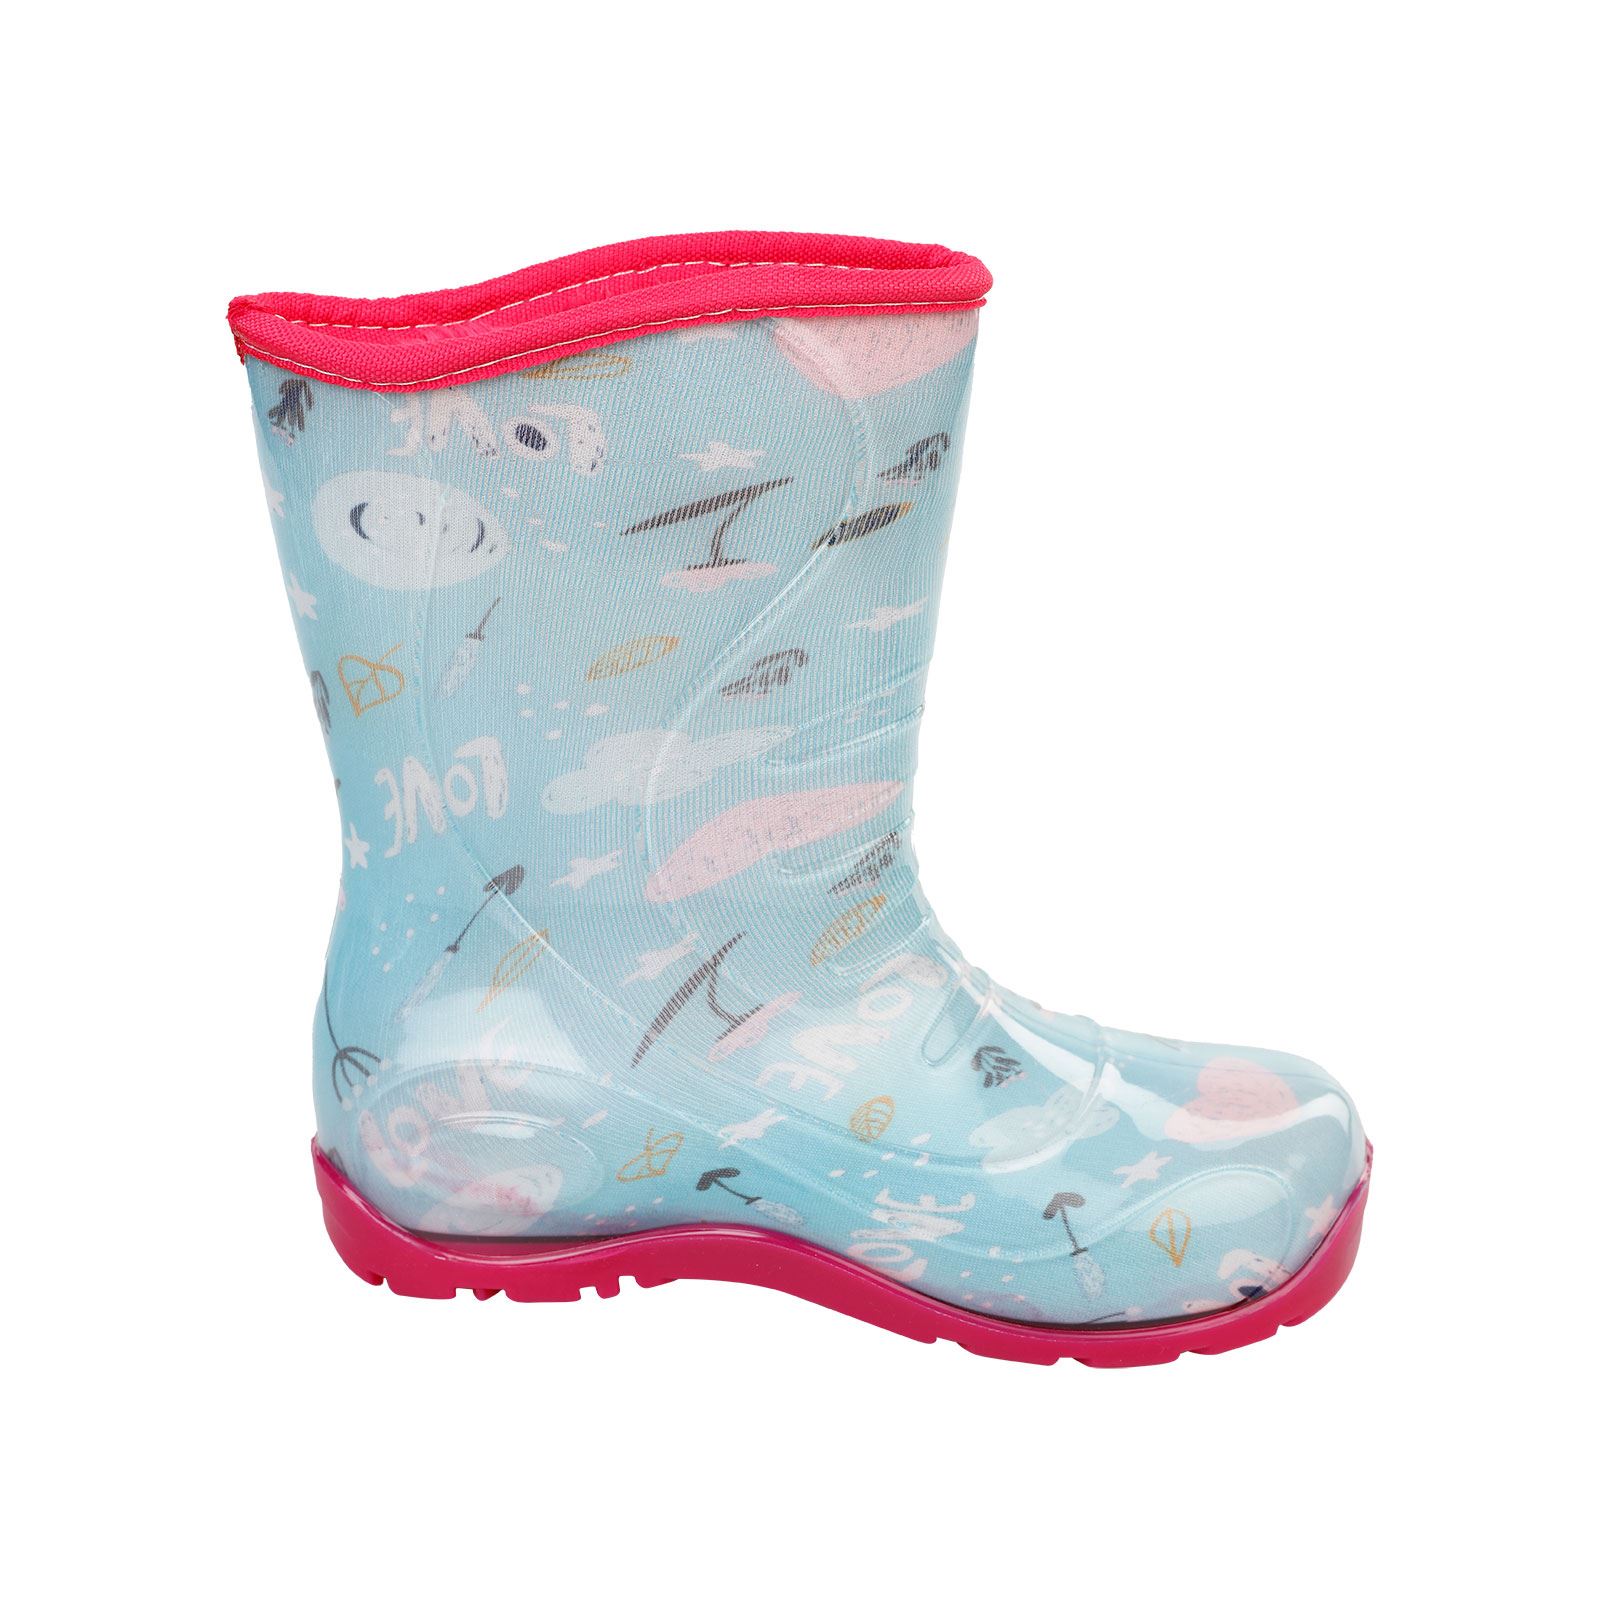 Boots Kız Çocuk Love Baskılı Yağmur Çizmesi 30-34 Numara Mint Yeşili